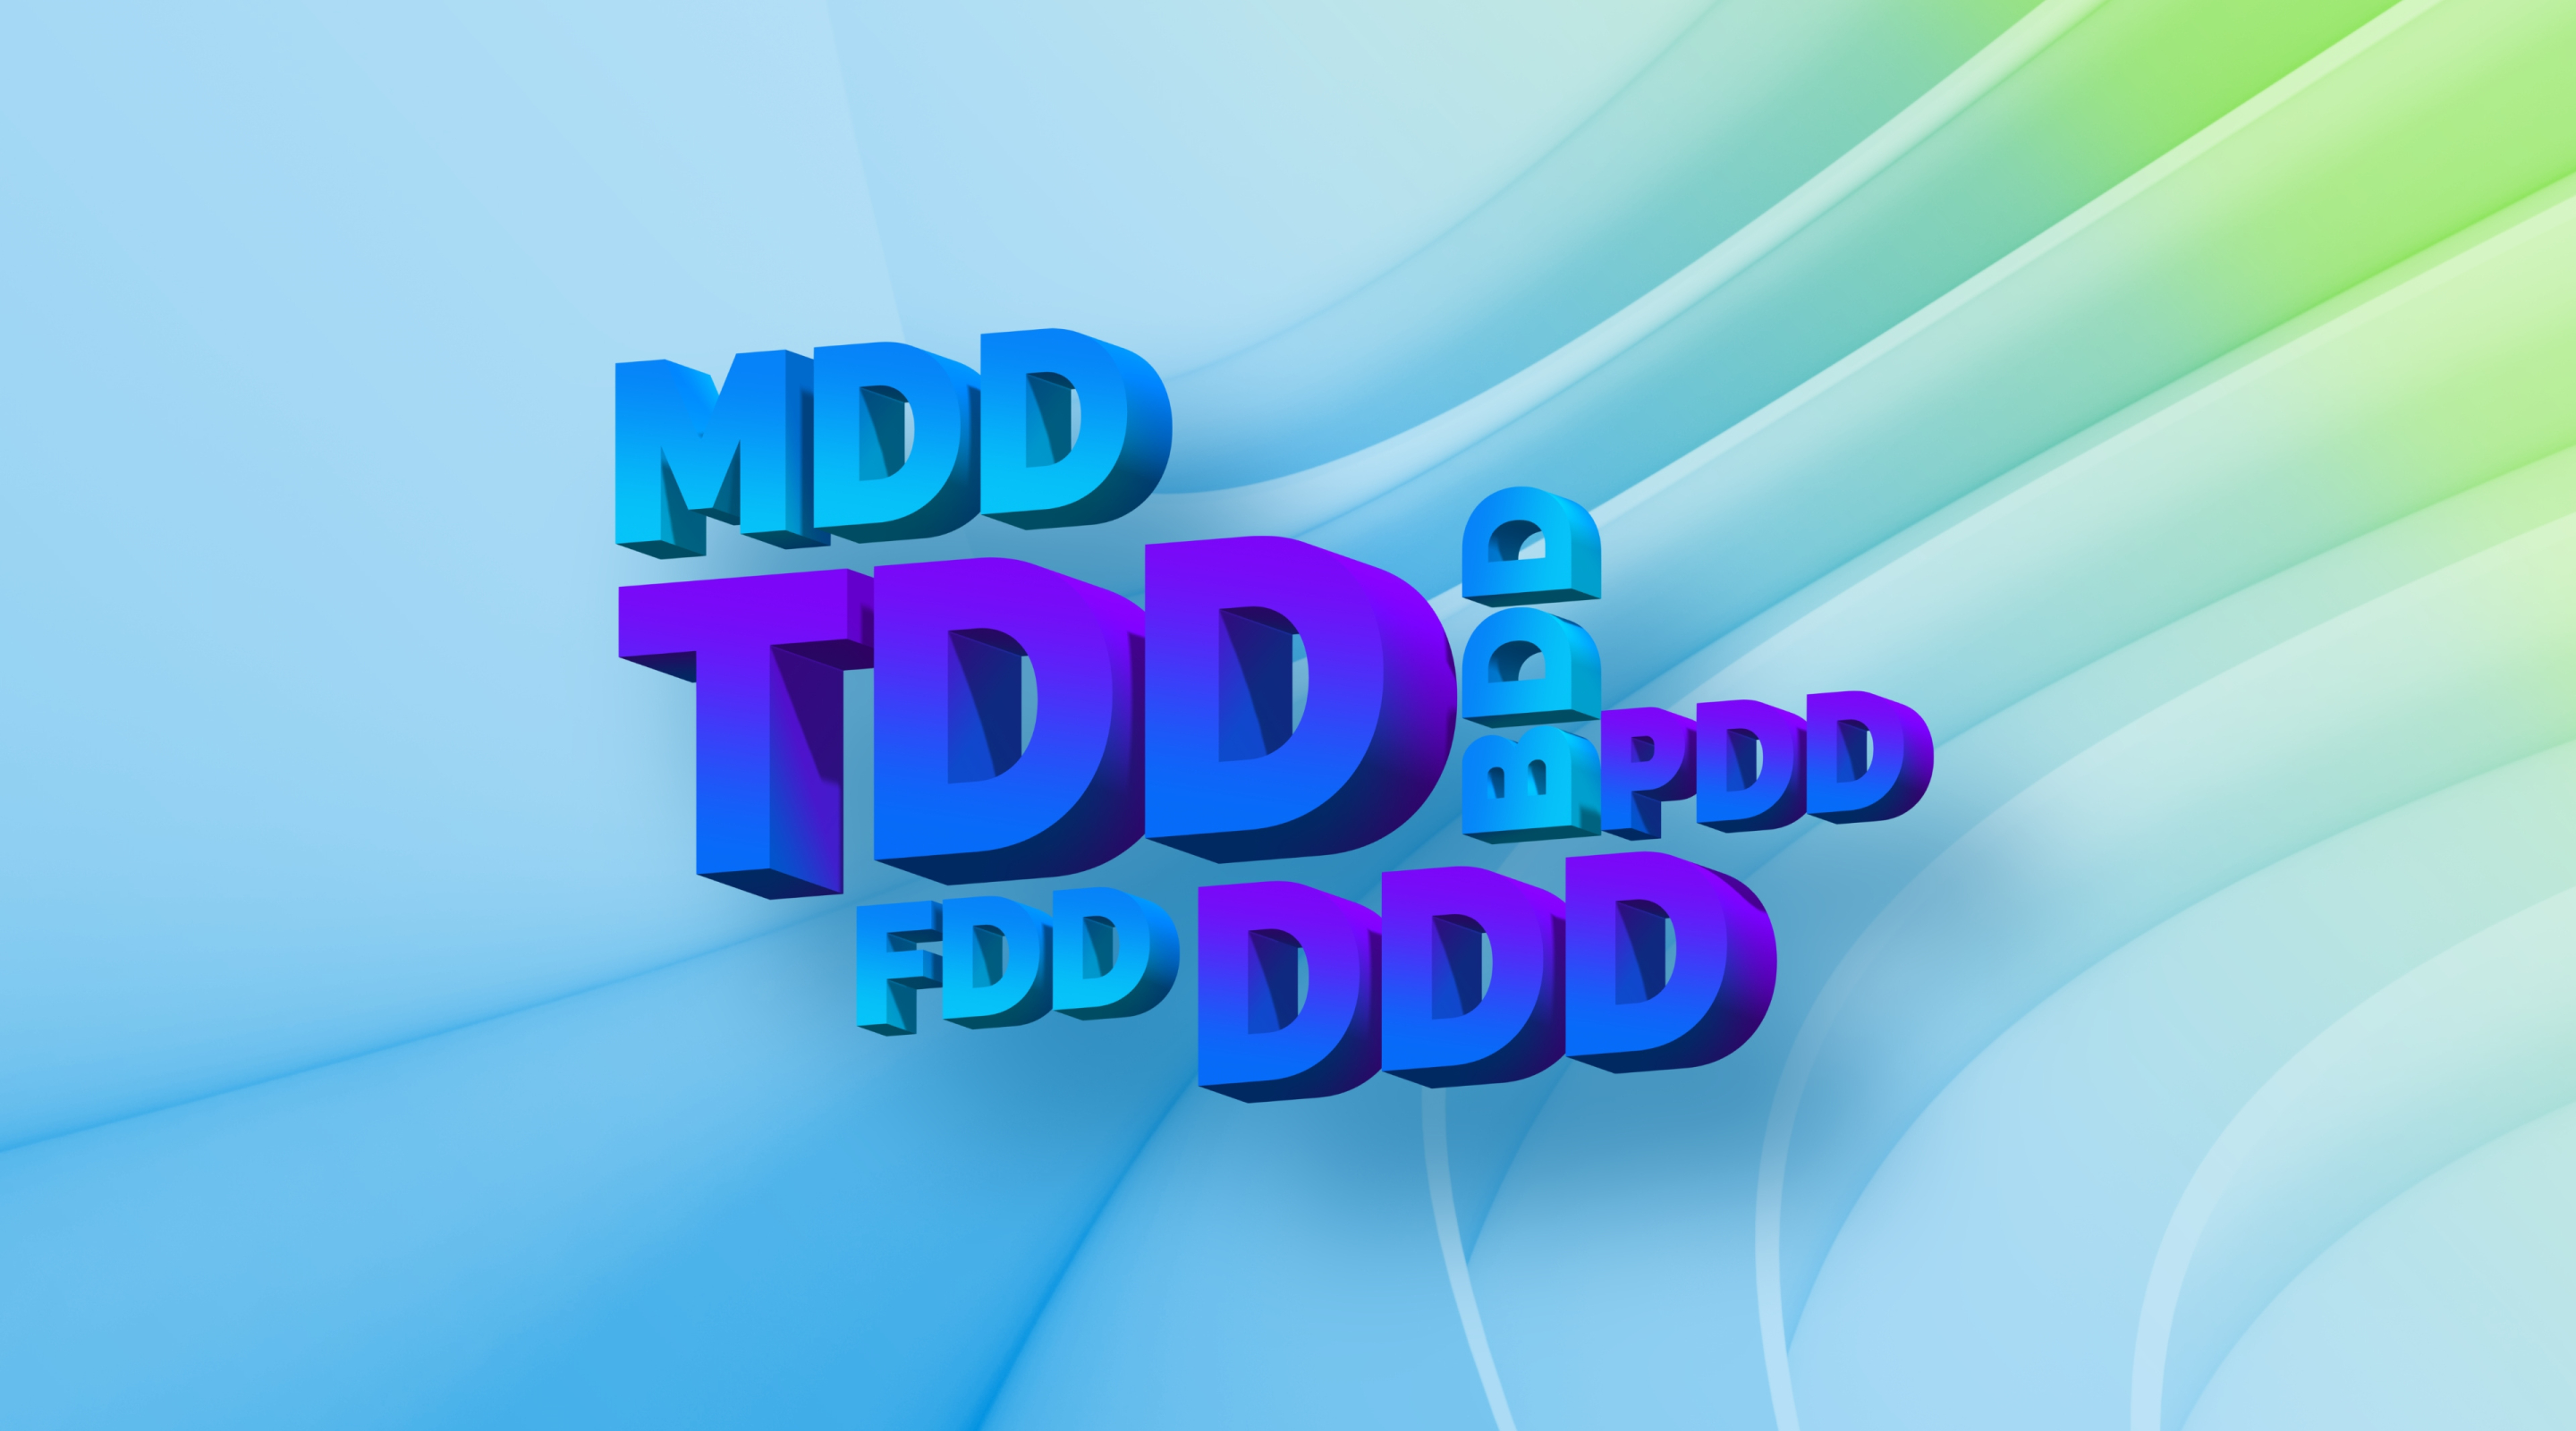 TDDx2, BDD, DDD, FDD, MDD та PDD, або все, що ви хочете дізнатися про Driven Development